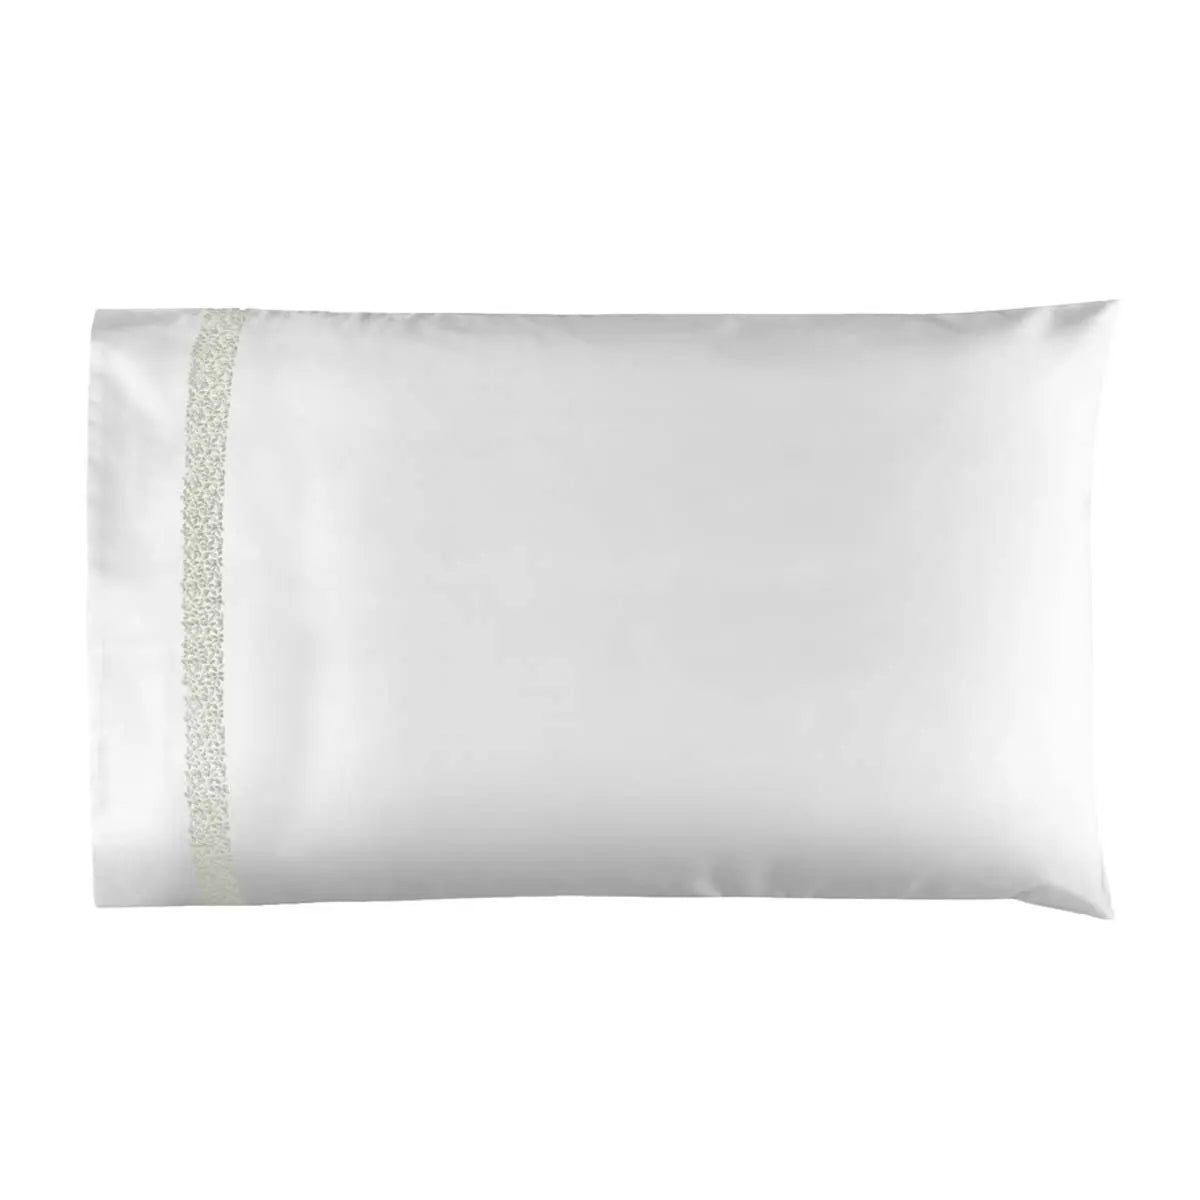 Bovi Malone Pillowcase in White/Dove